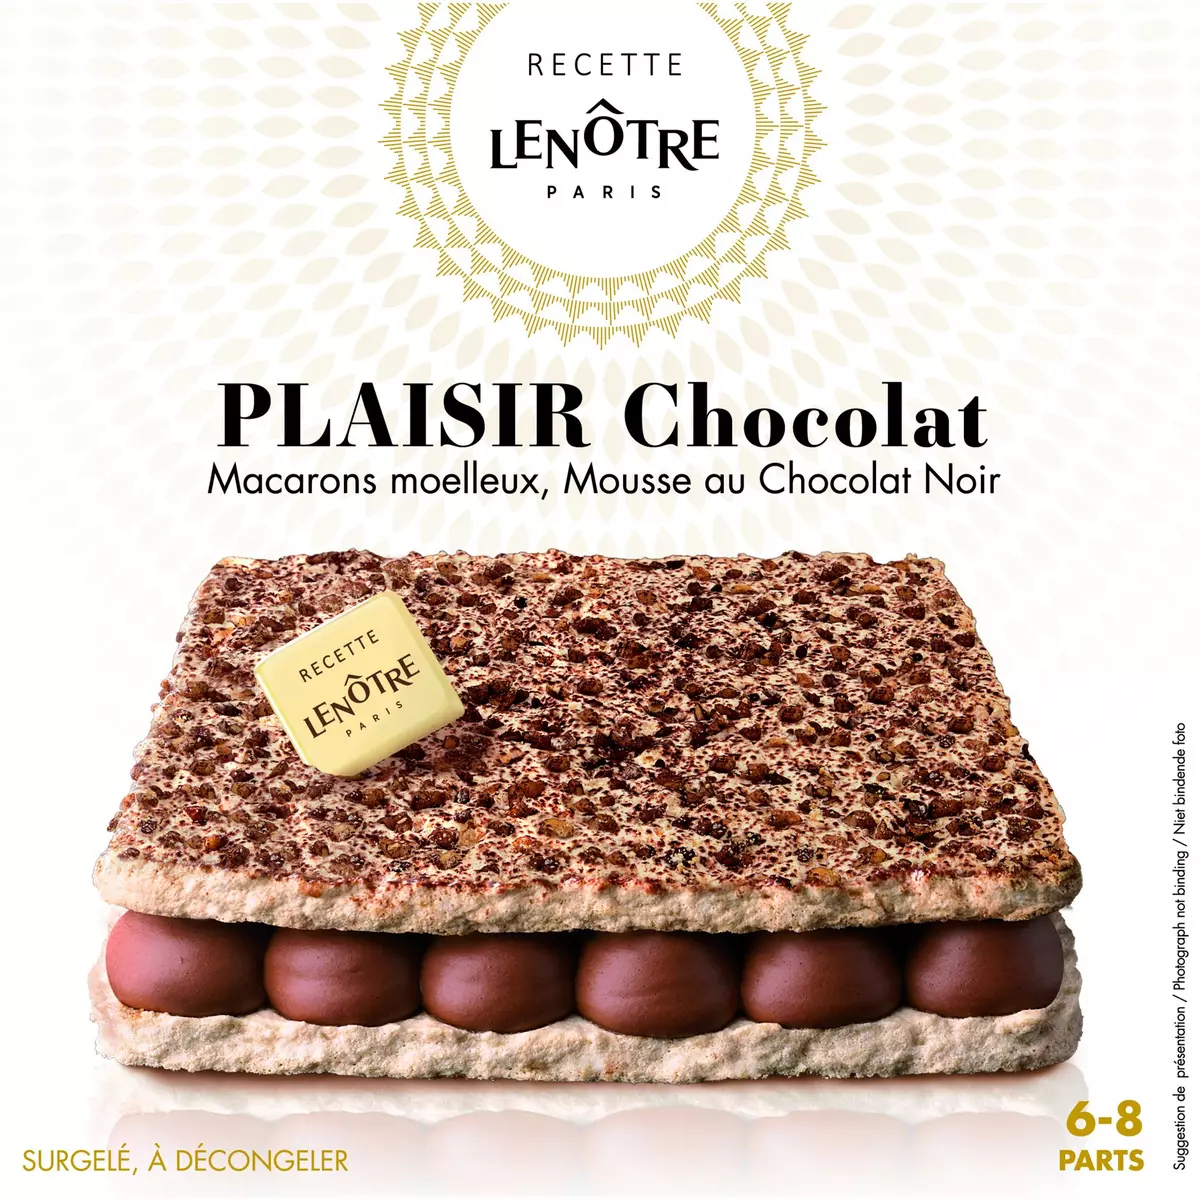 LENOTRE Recette Lenôtre plaisir chocolat 6-8 parts 180g